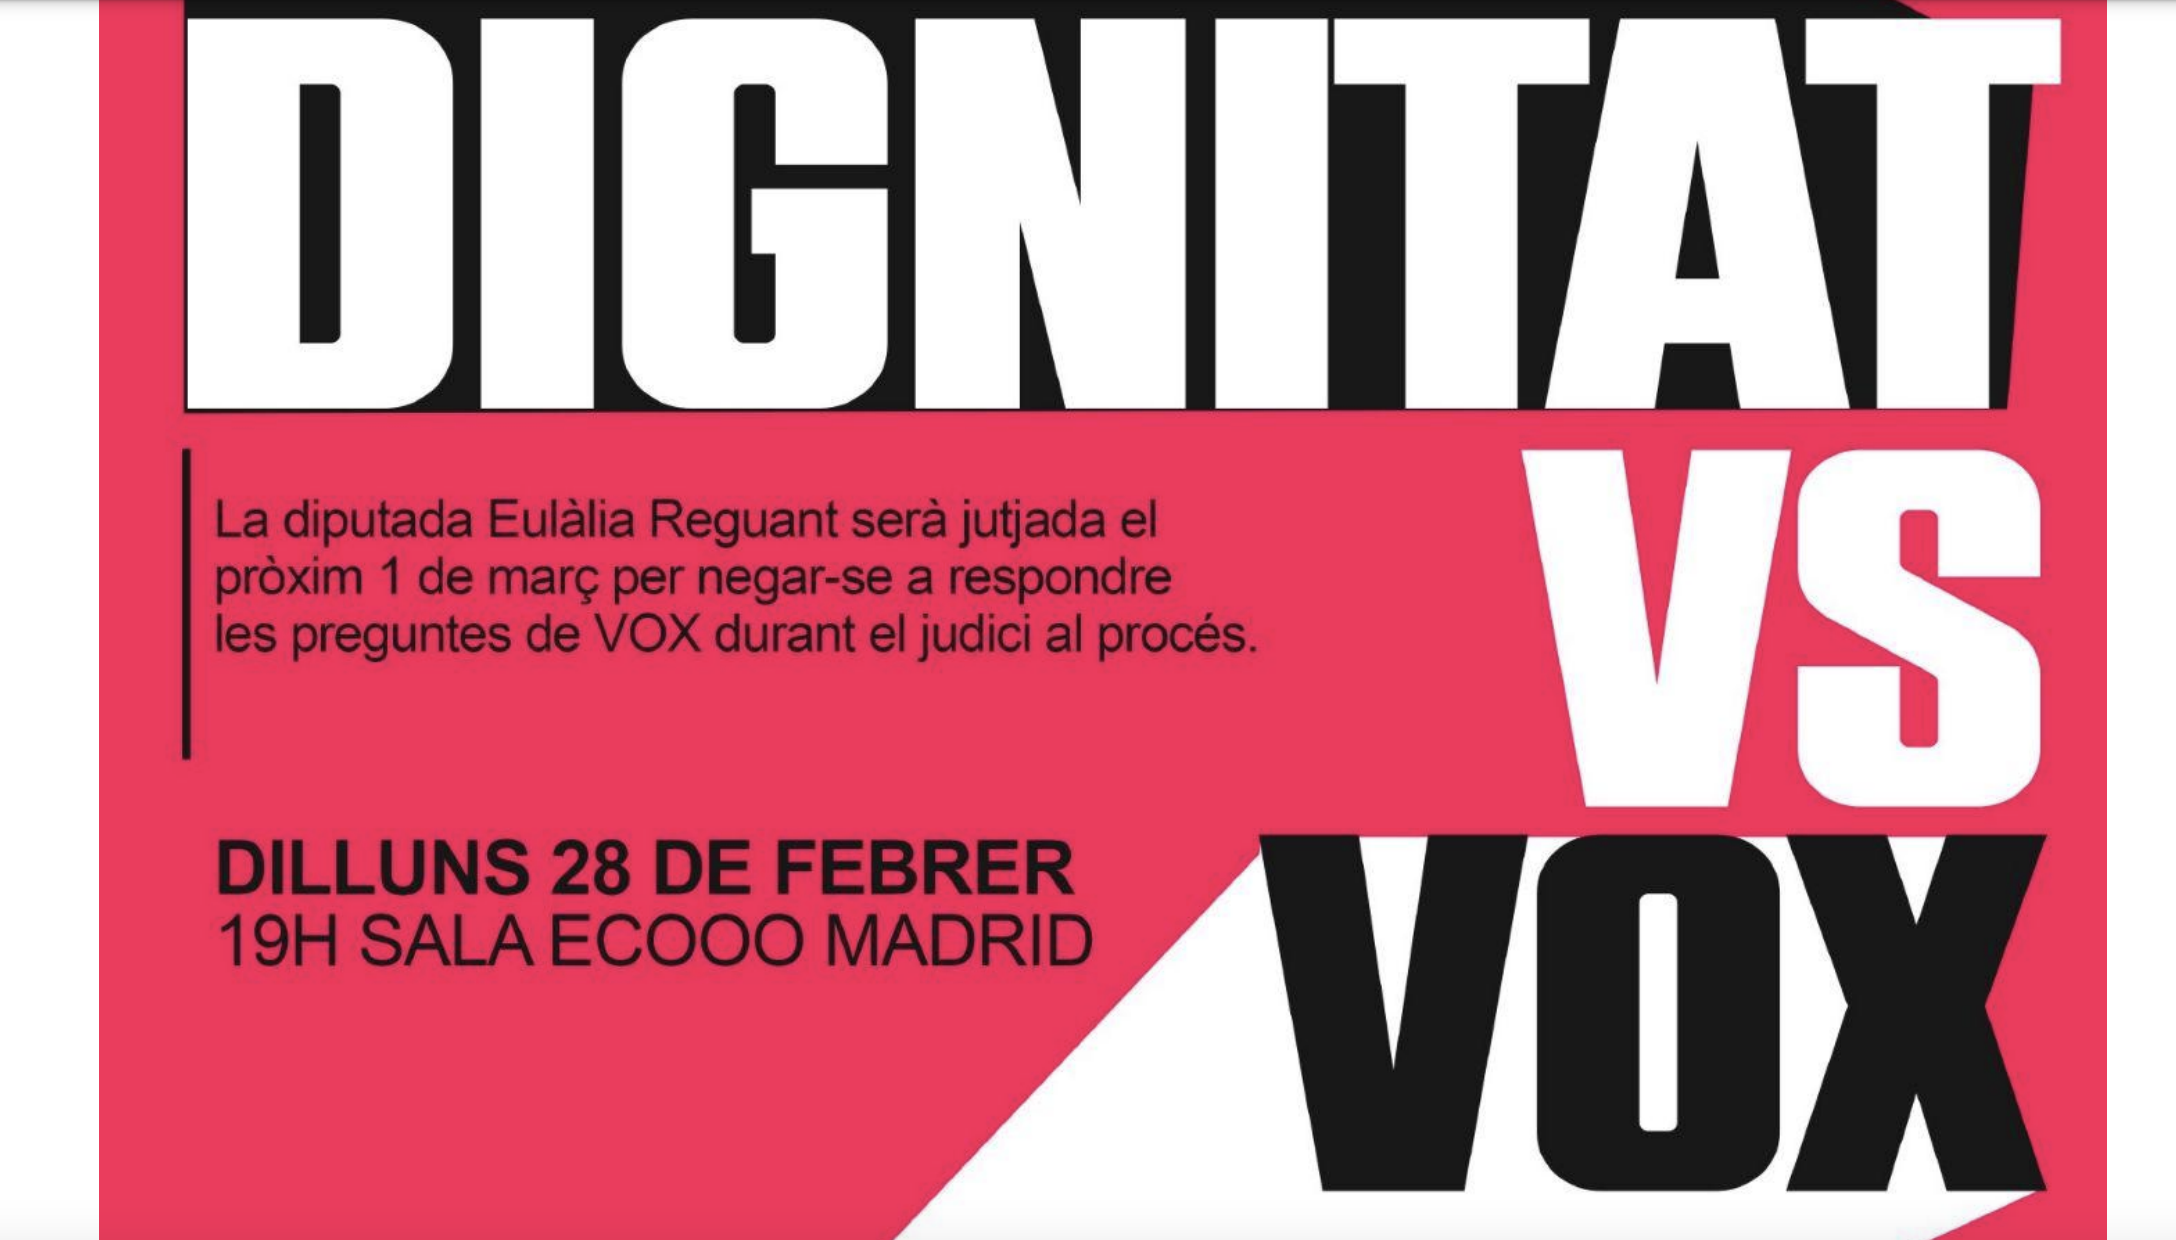 La CUP desembarca en Madrid para celebrar un acto contra Vox